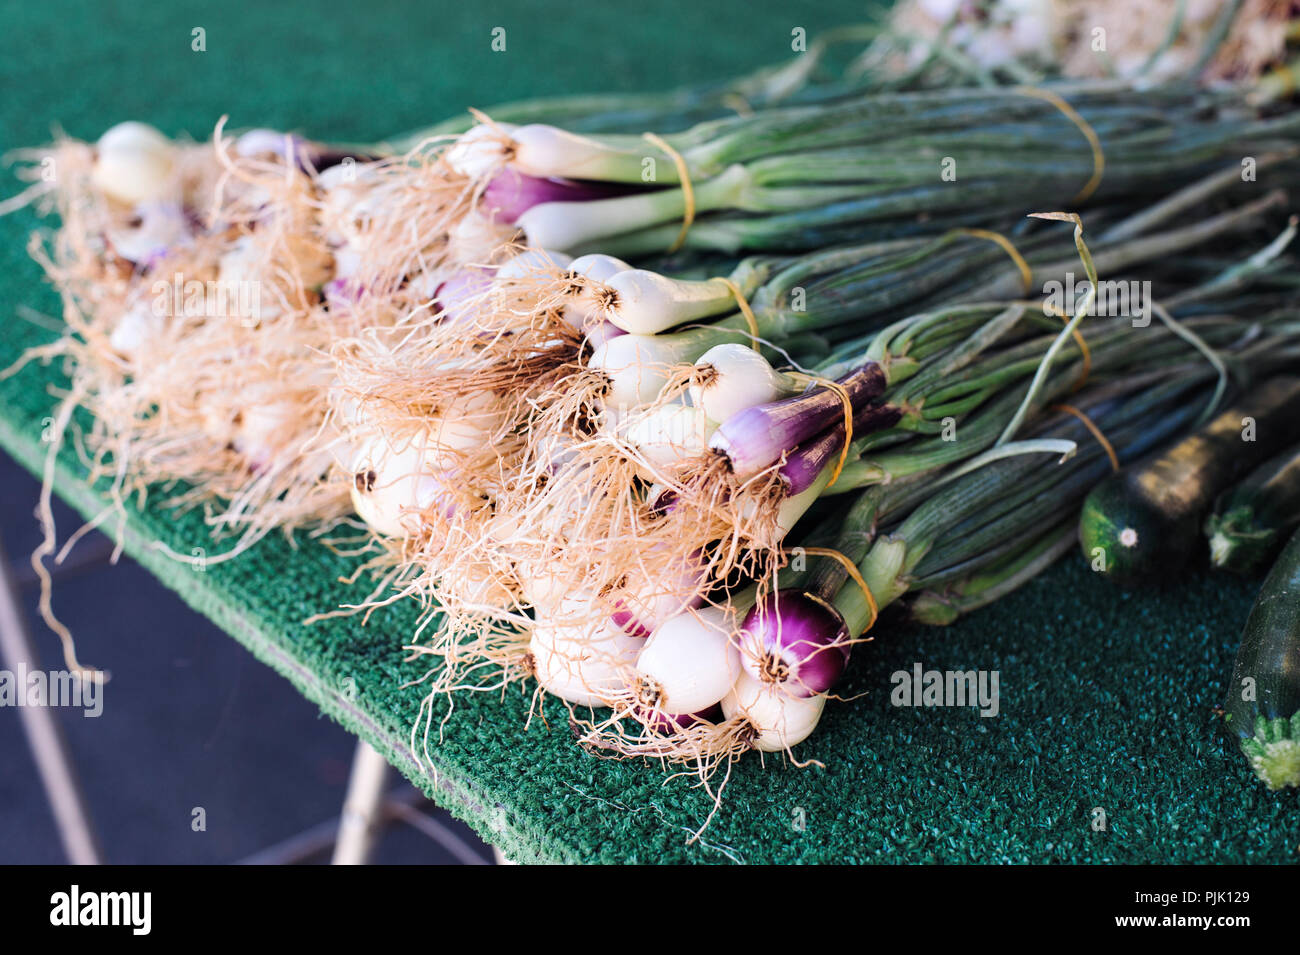 Manojo de cebollas verdes reunidos junto a un establo en el mercado de granjeros Foto de stock